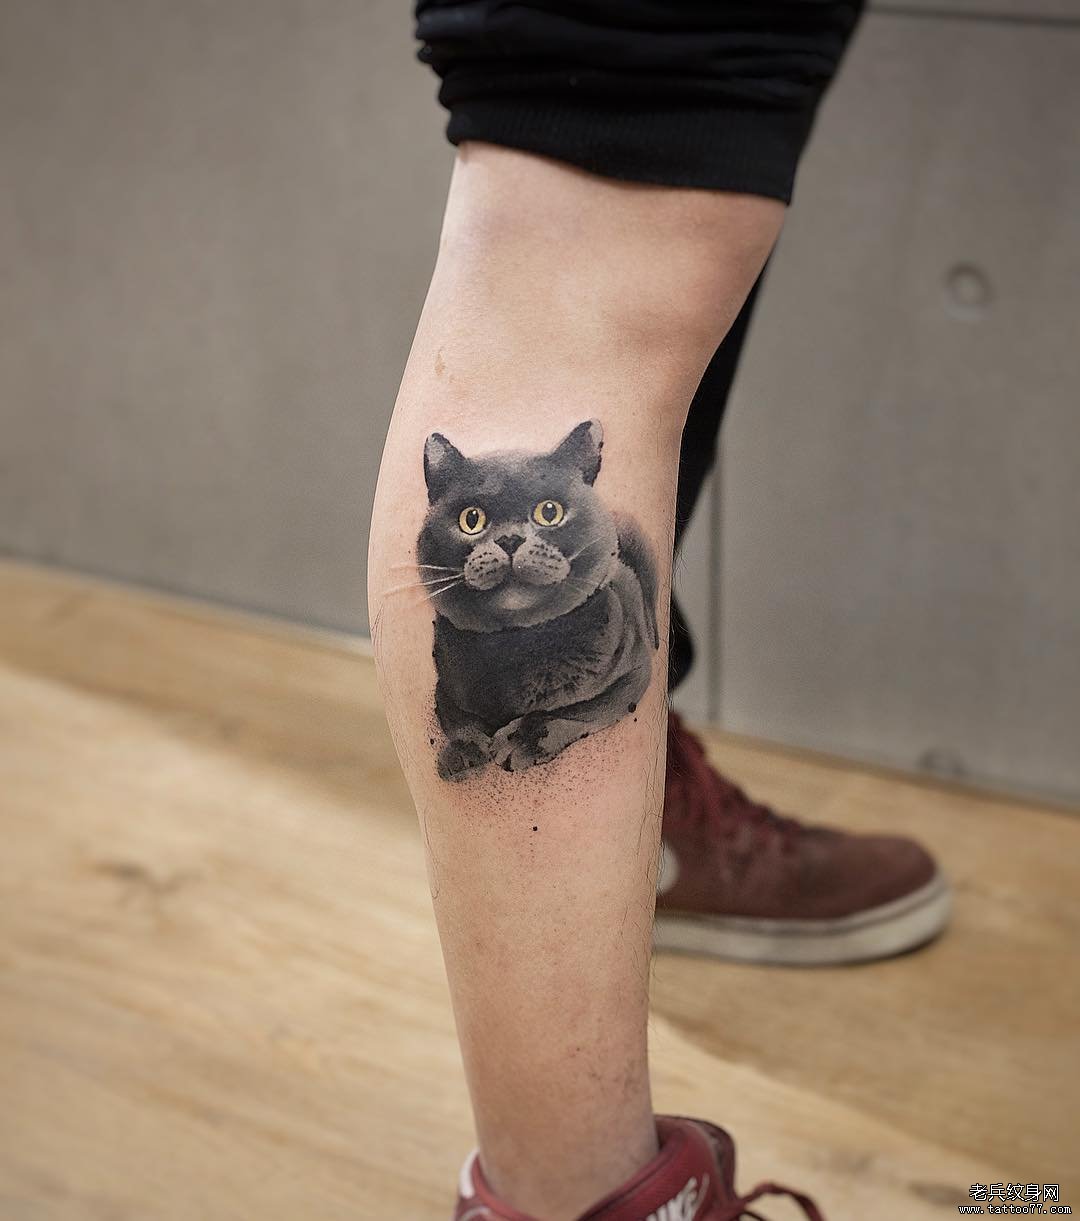 有什么有趣的猫纹身图案可以参考么？ - 知乎